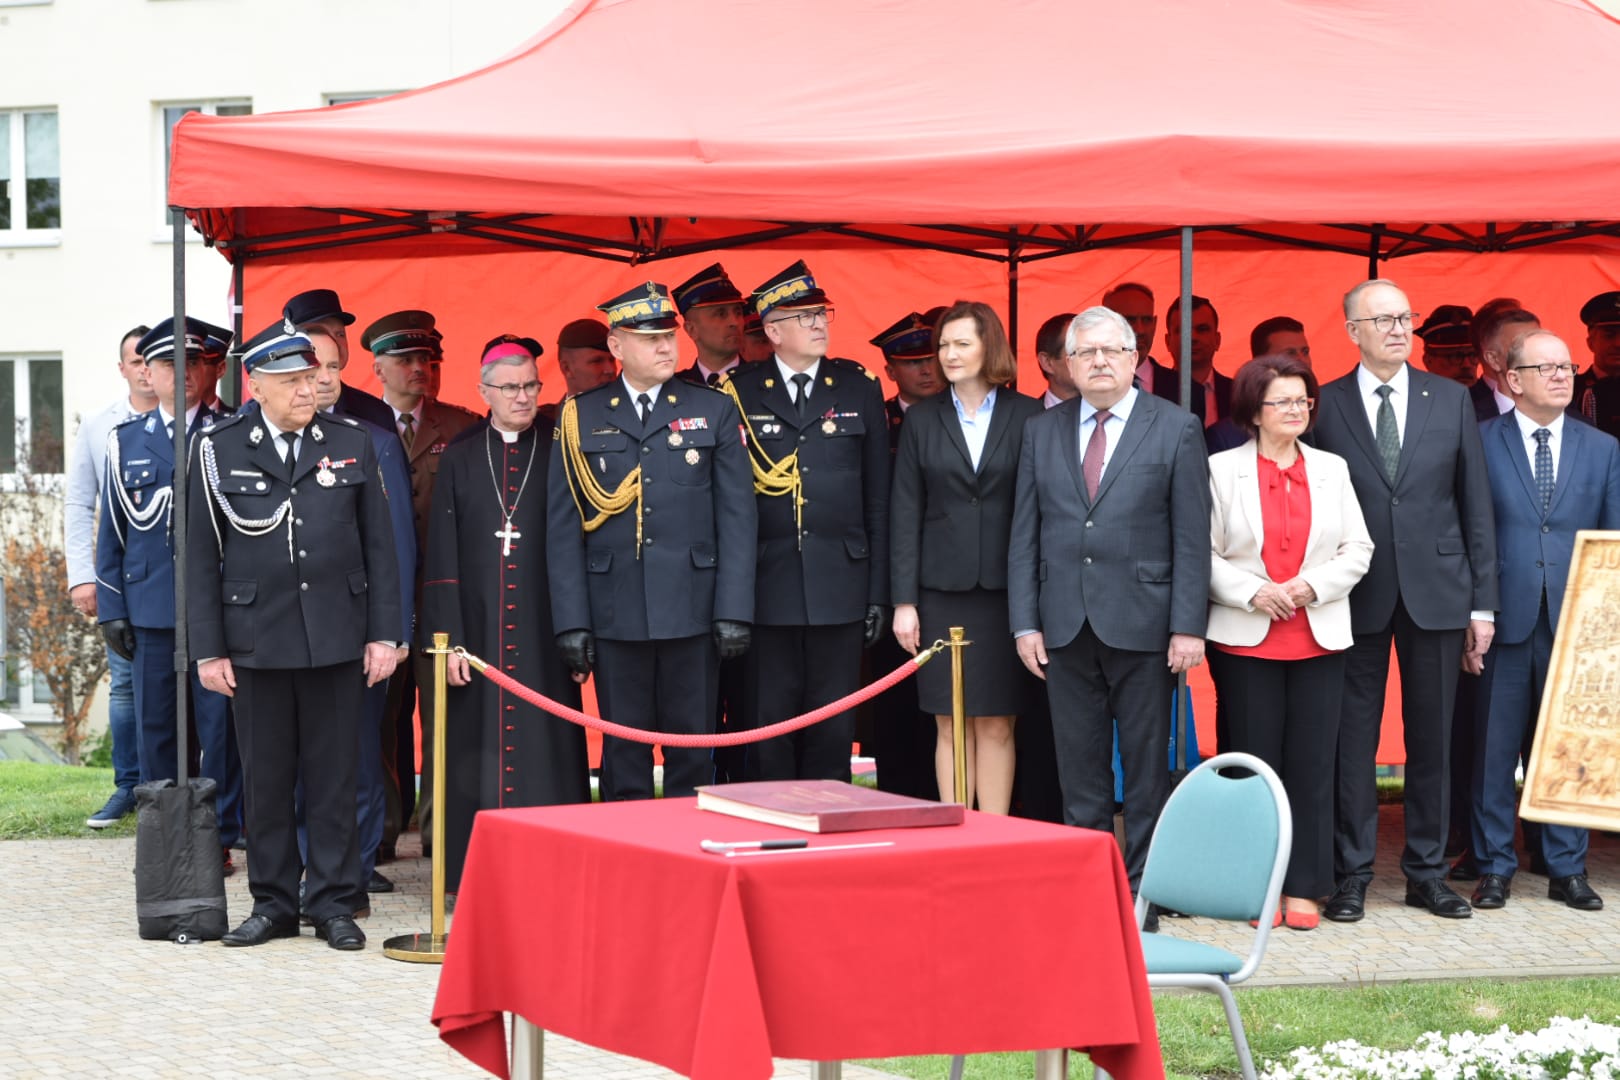 Zastępca komendanta głównego, podkarpacki komendant wojewódzki w otoczeniu zaproszonych gości stoją na uroczystości pod namiotem koloru czerwonego